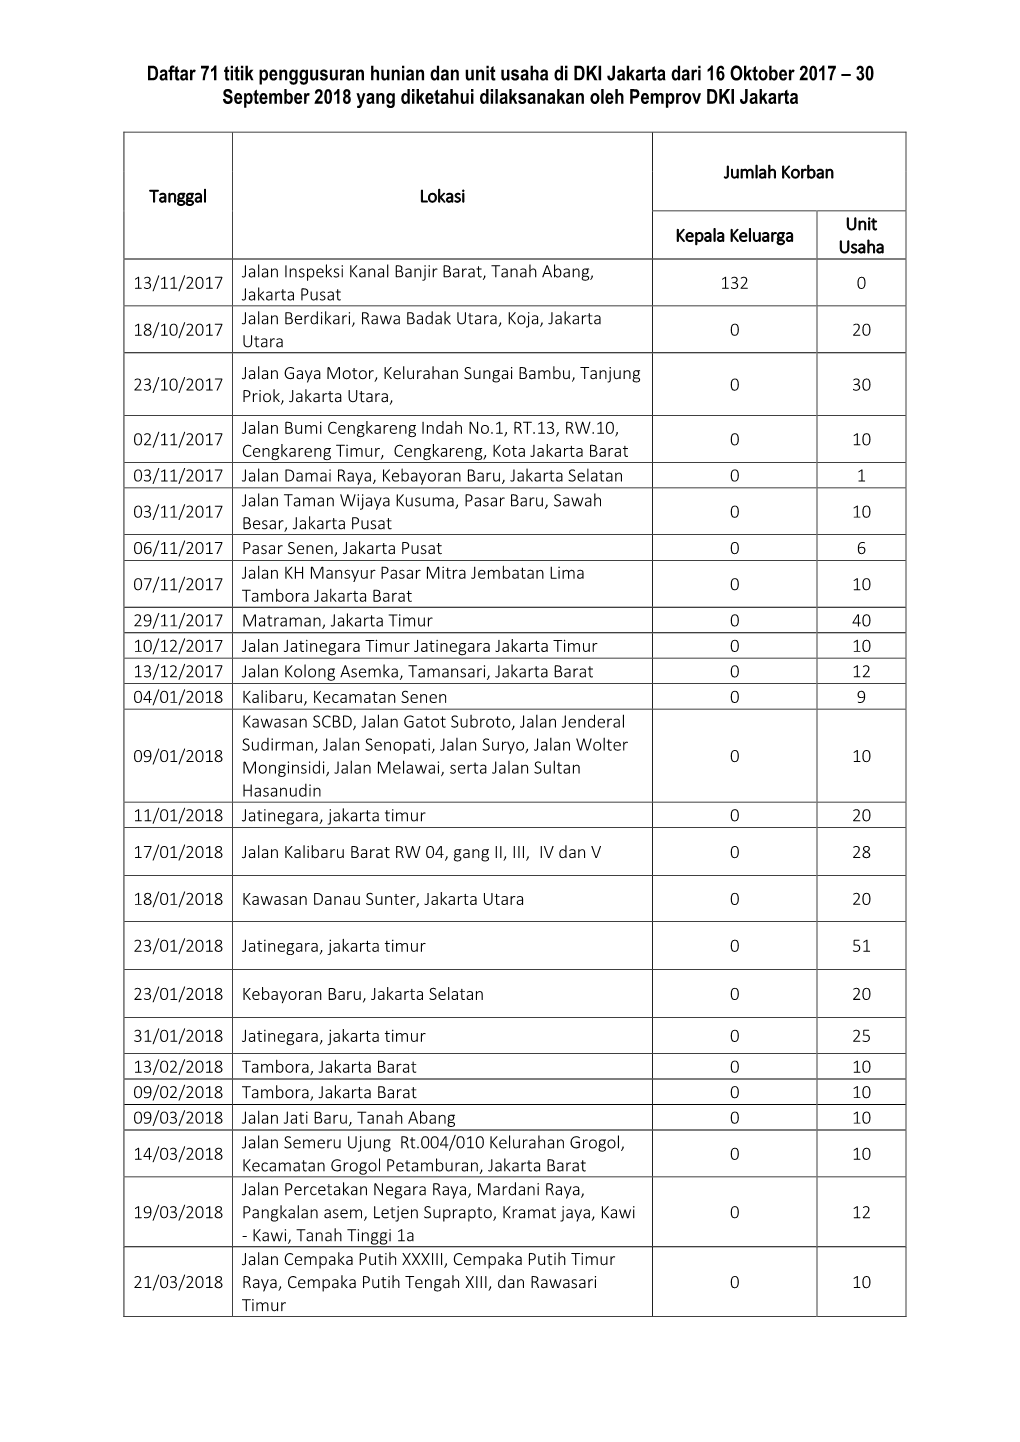 Daftar 71 Titik Penggusuran Hunian Dan Unit Usaha Di DKI Jakarta Dari 16 Oktober 2017 – 30 September 2018 Yang Diketahui Dilaksanakan Oleh Pemprov DKI Jakarta